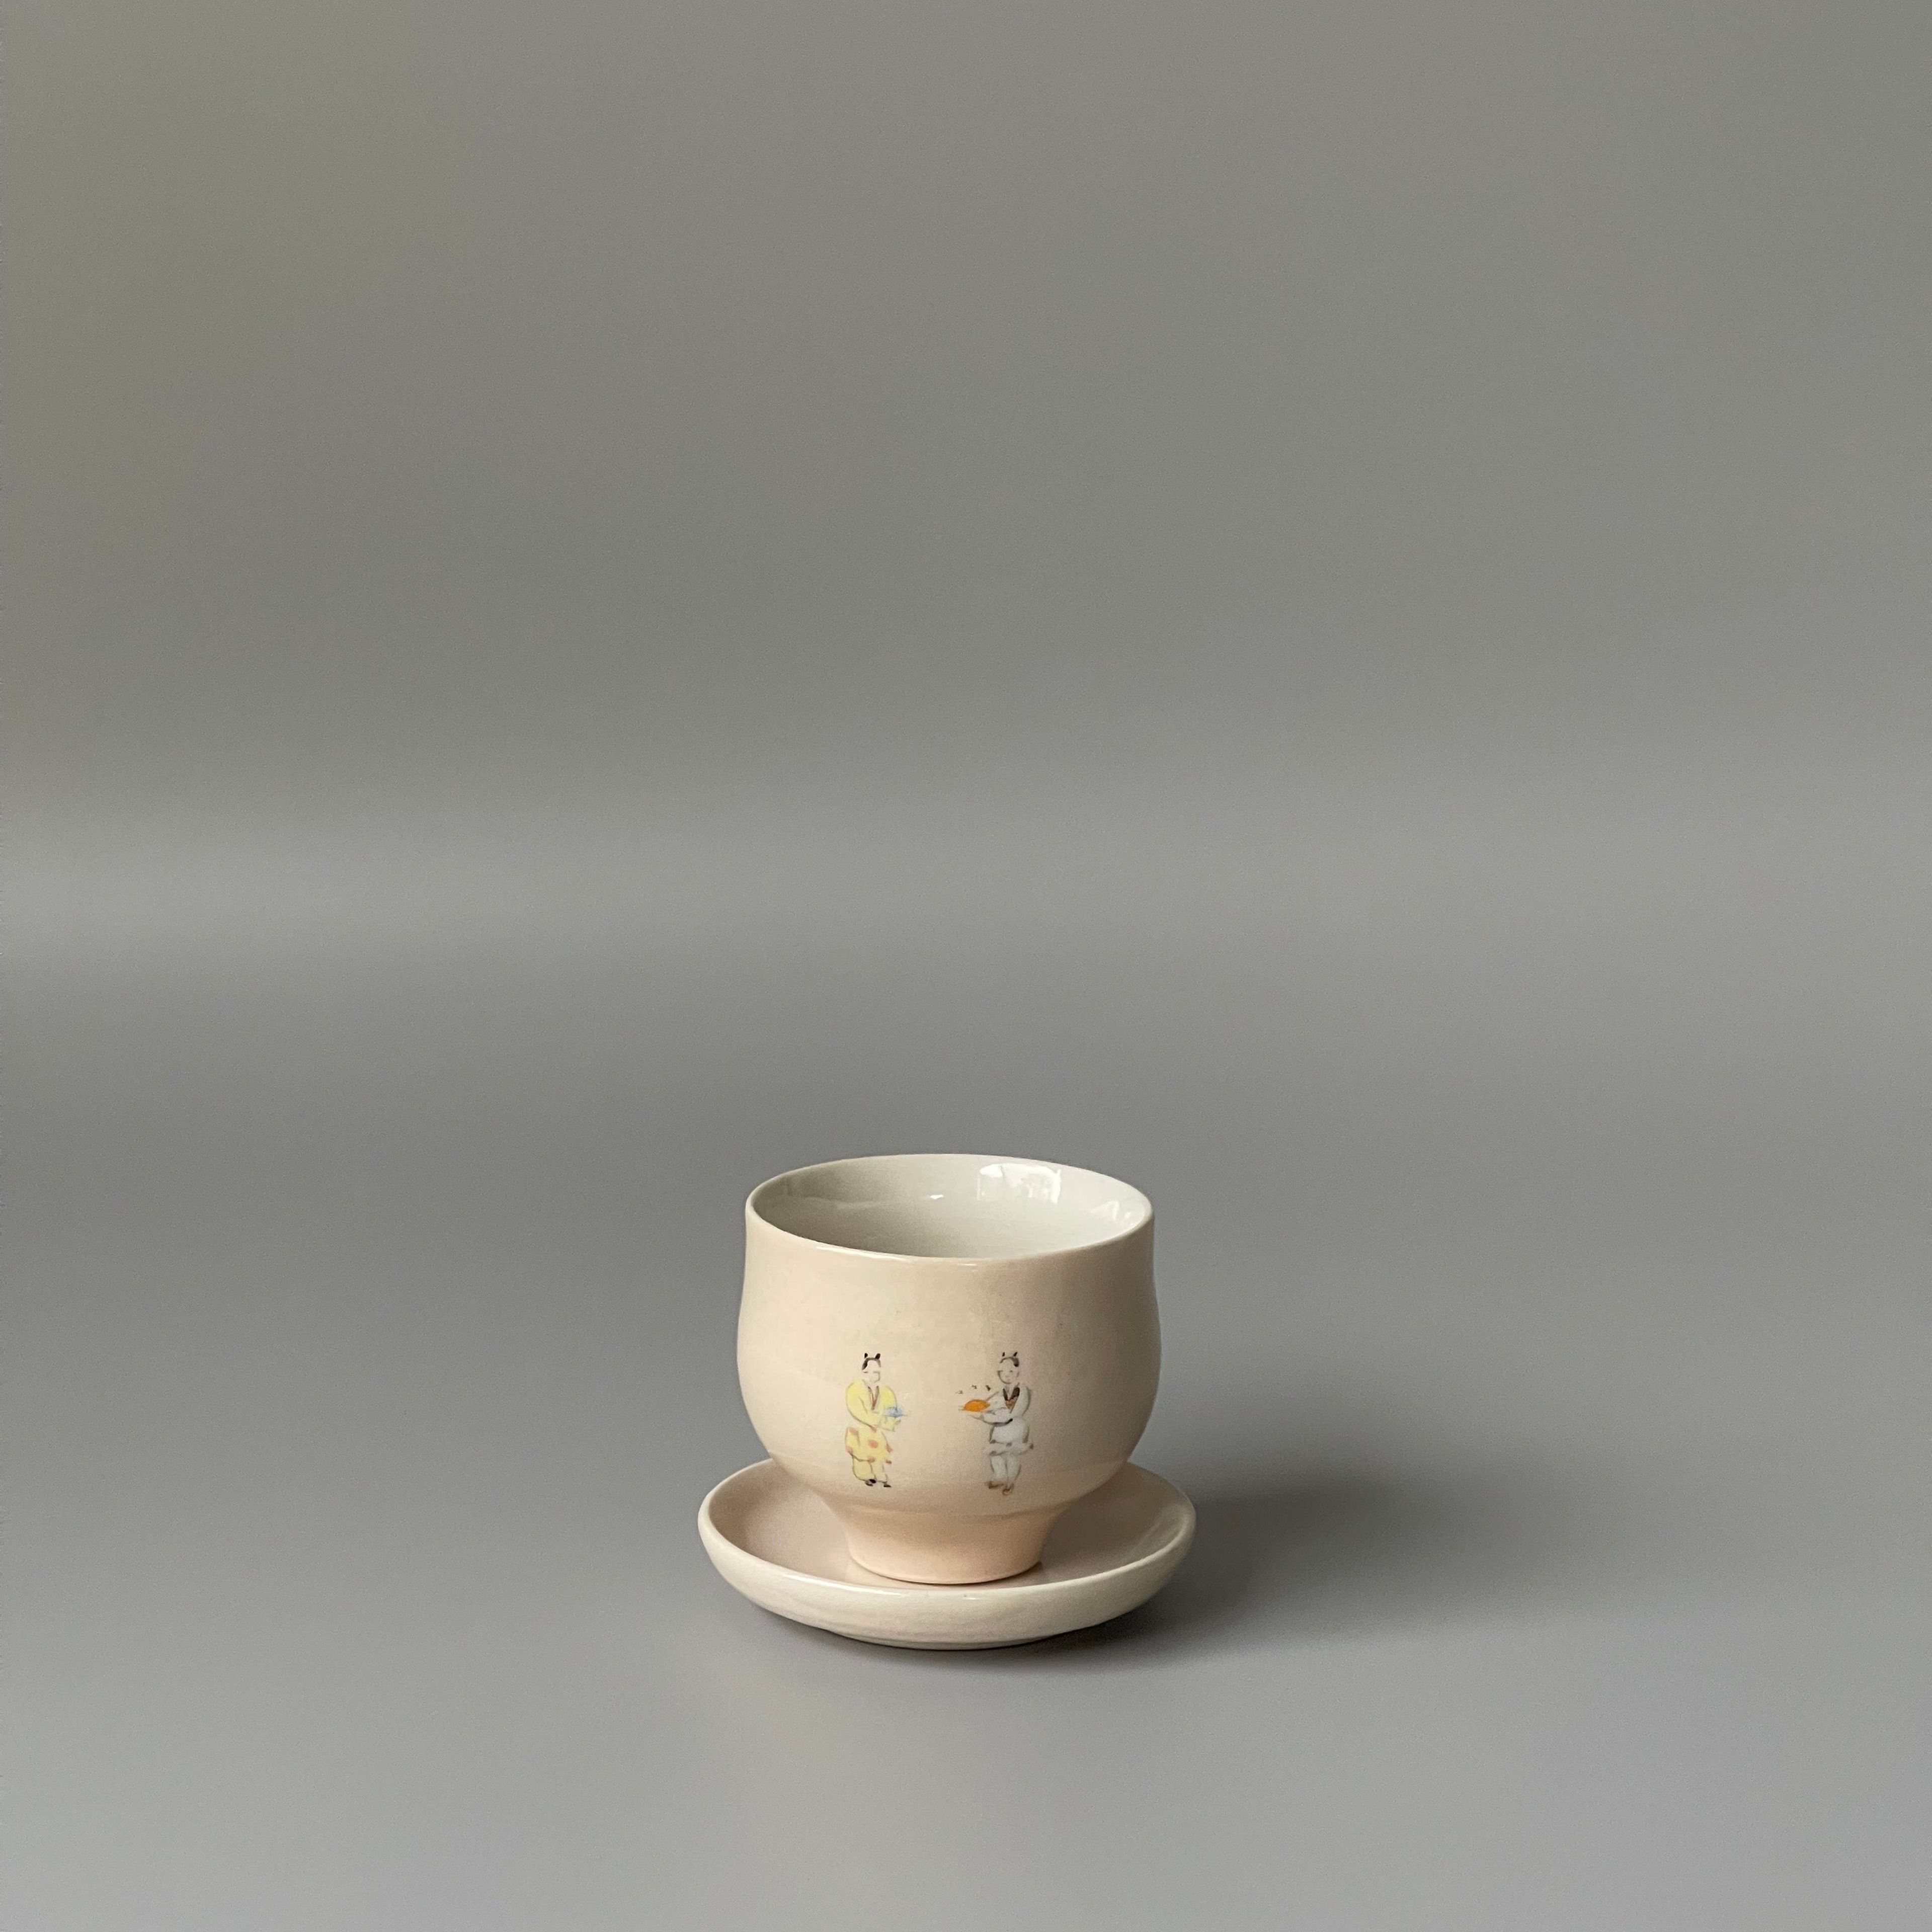 Tea Friends Tea Cup with Saucer